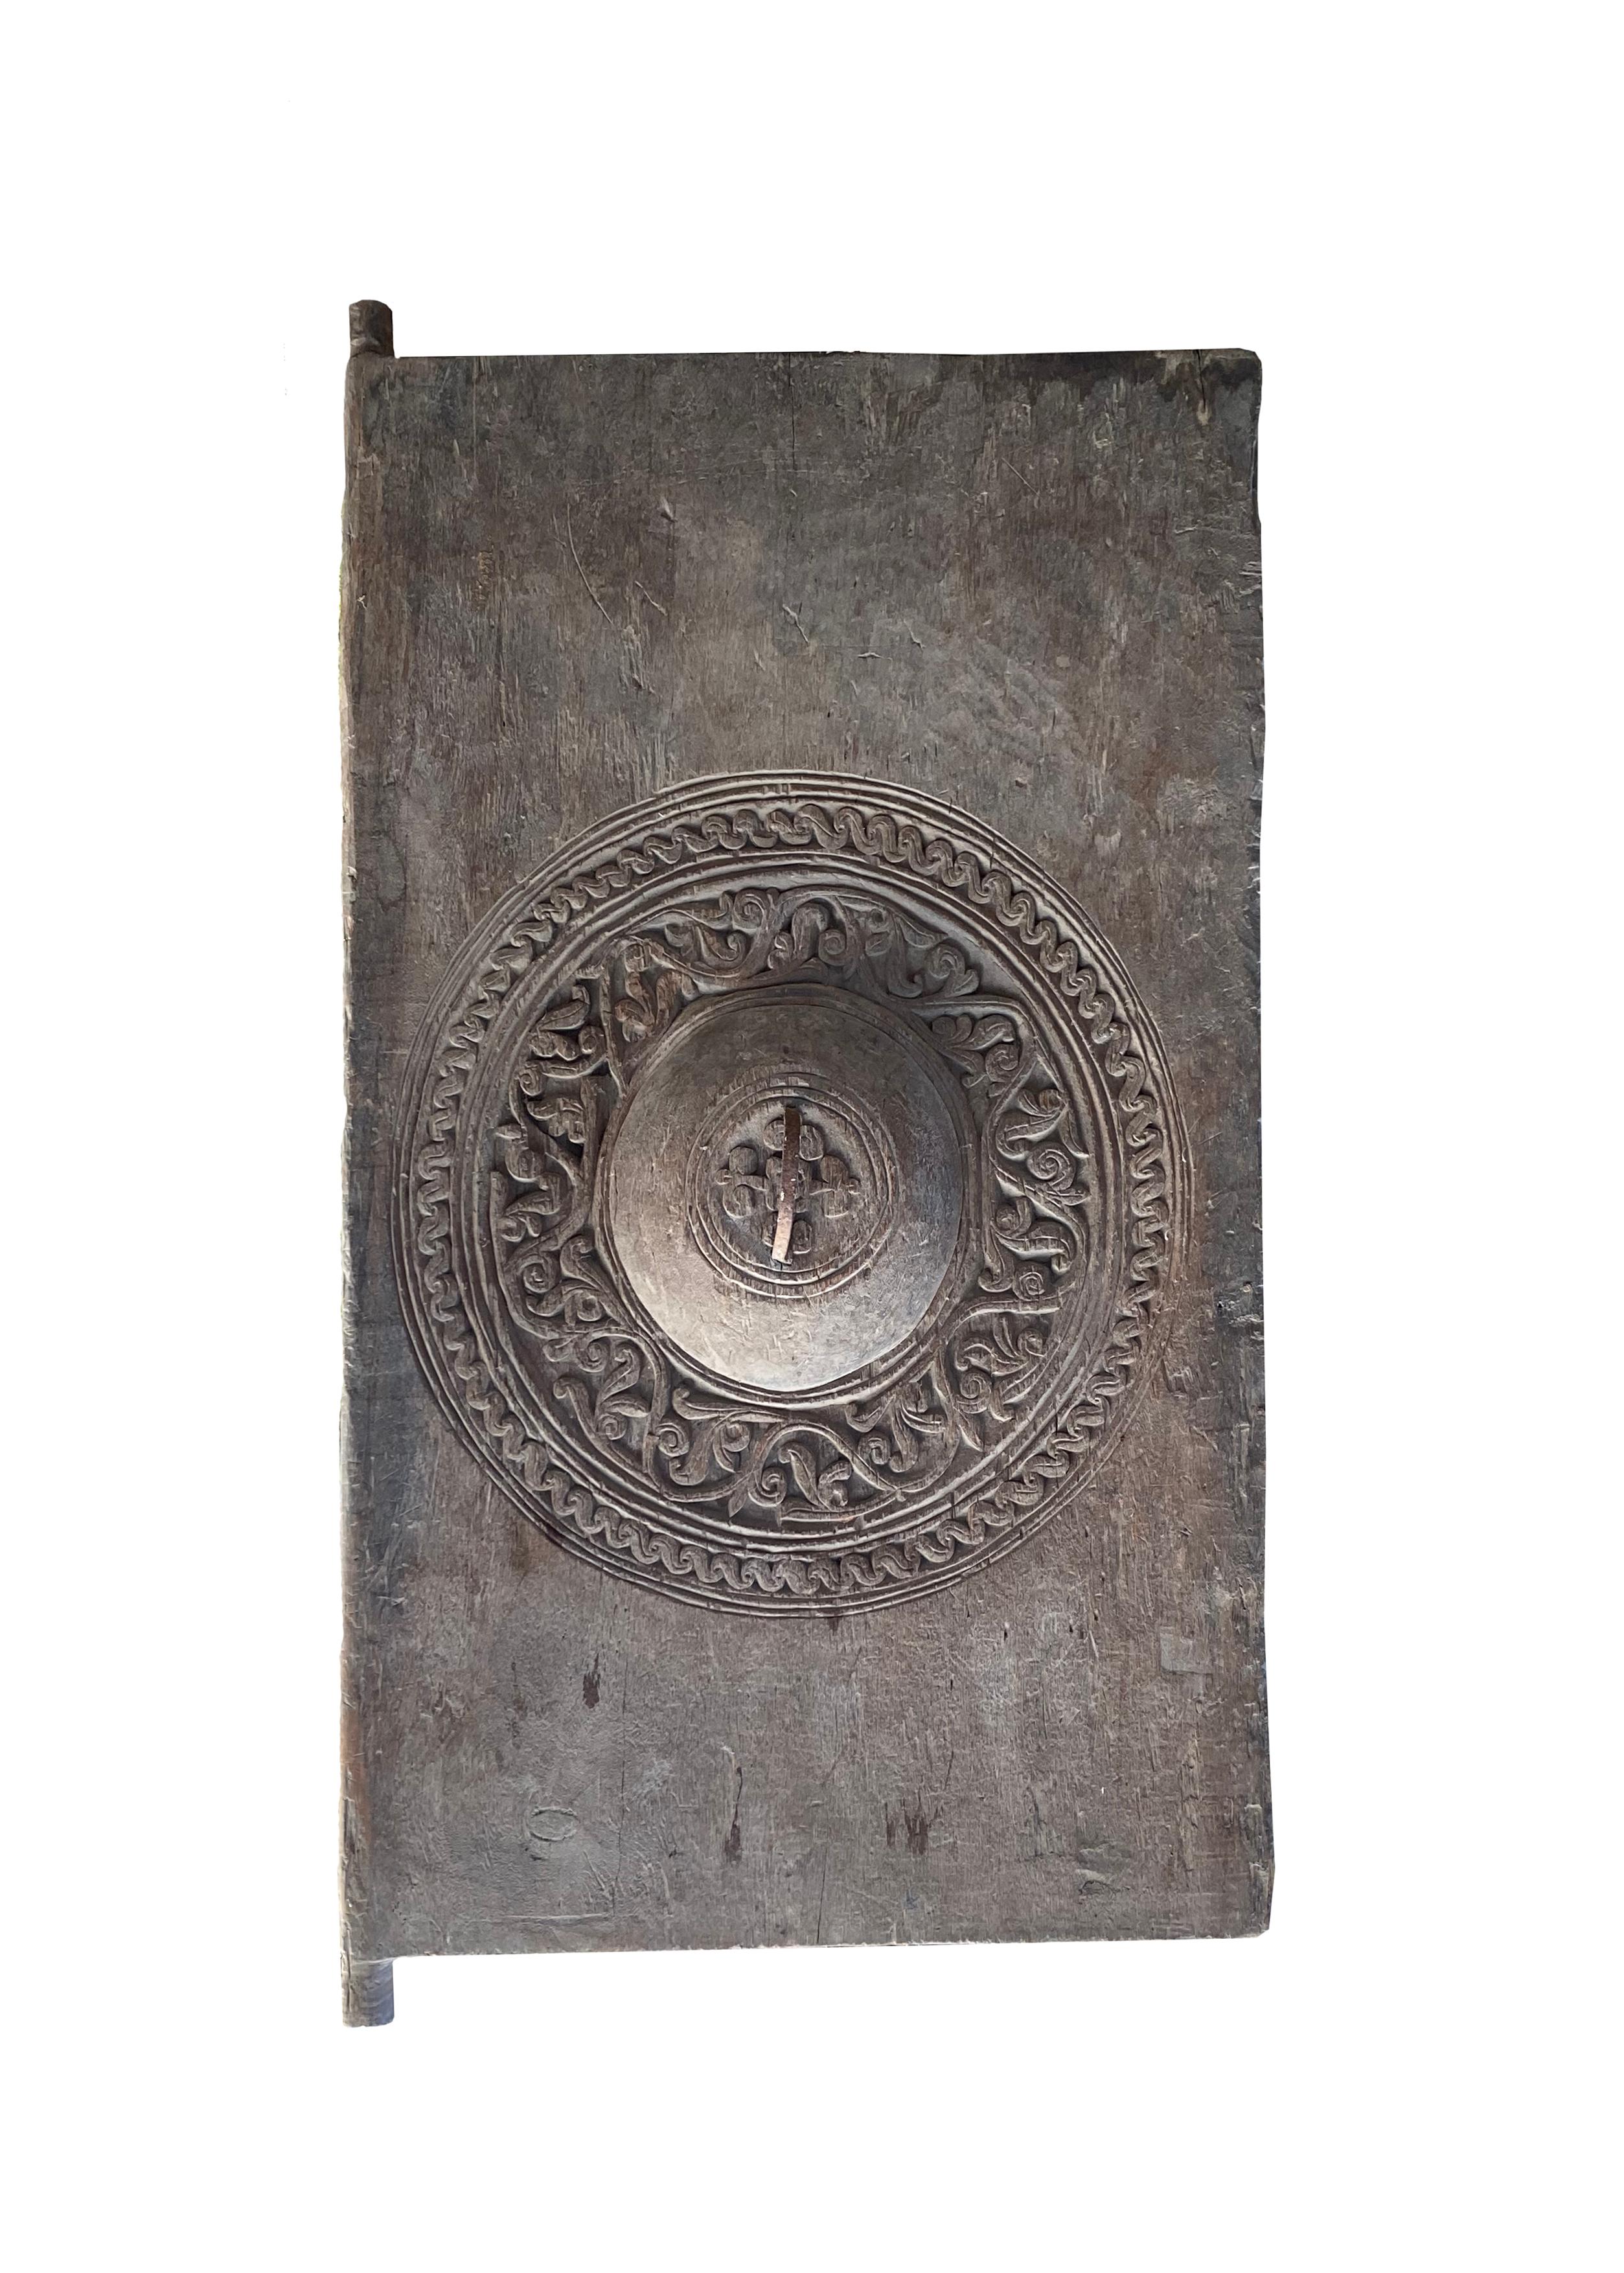 Porte de grenier à riz de Lampung, Sumatra, Indonésie c. 1900. Il présente une magnifique patine liée à l'âge, avec des textures et des nuances de bois très marquées. Un objet sculptural unique qui apporte de la chaleur à tout espace. Cette porte